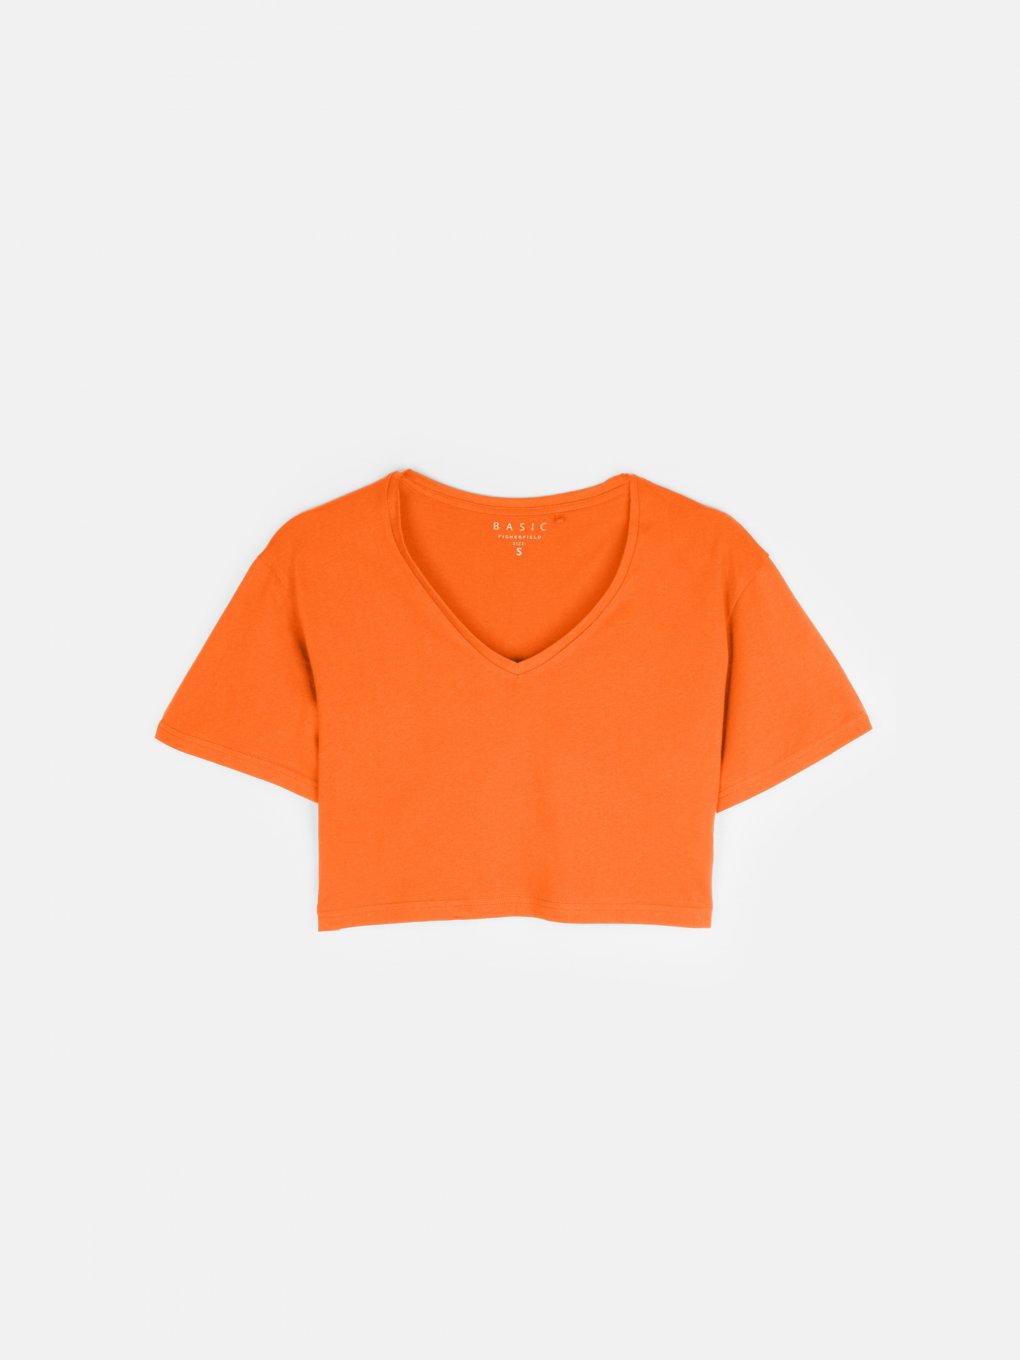 Základní basic bavlněné krátké tričko dámské